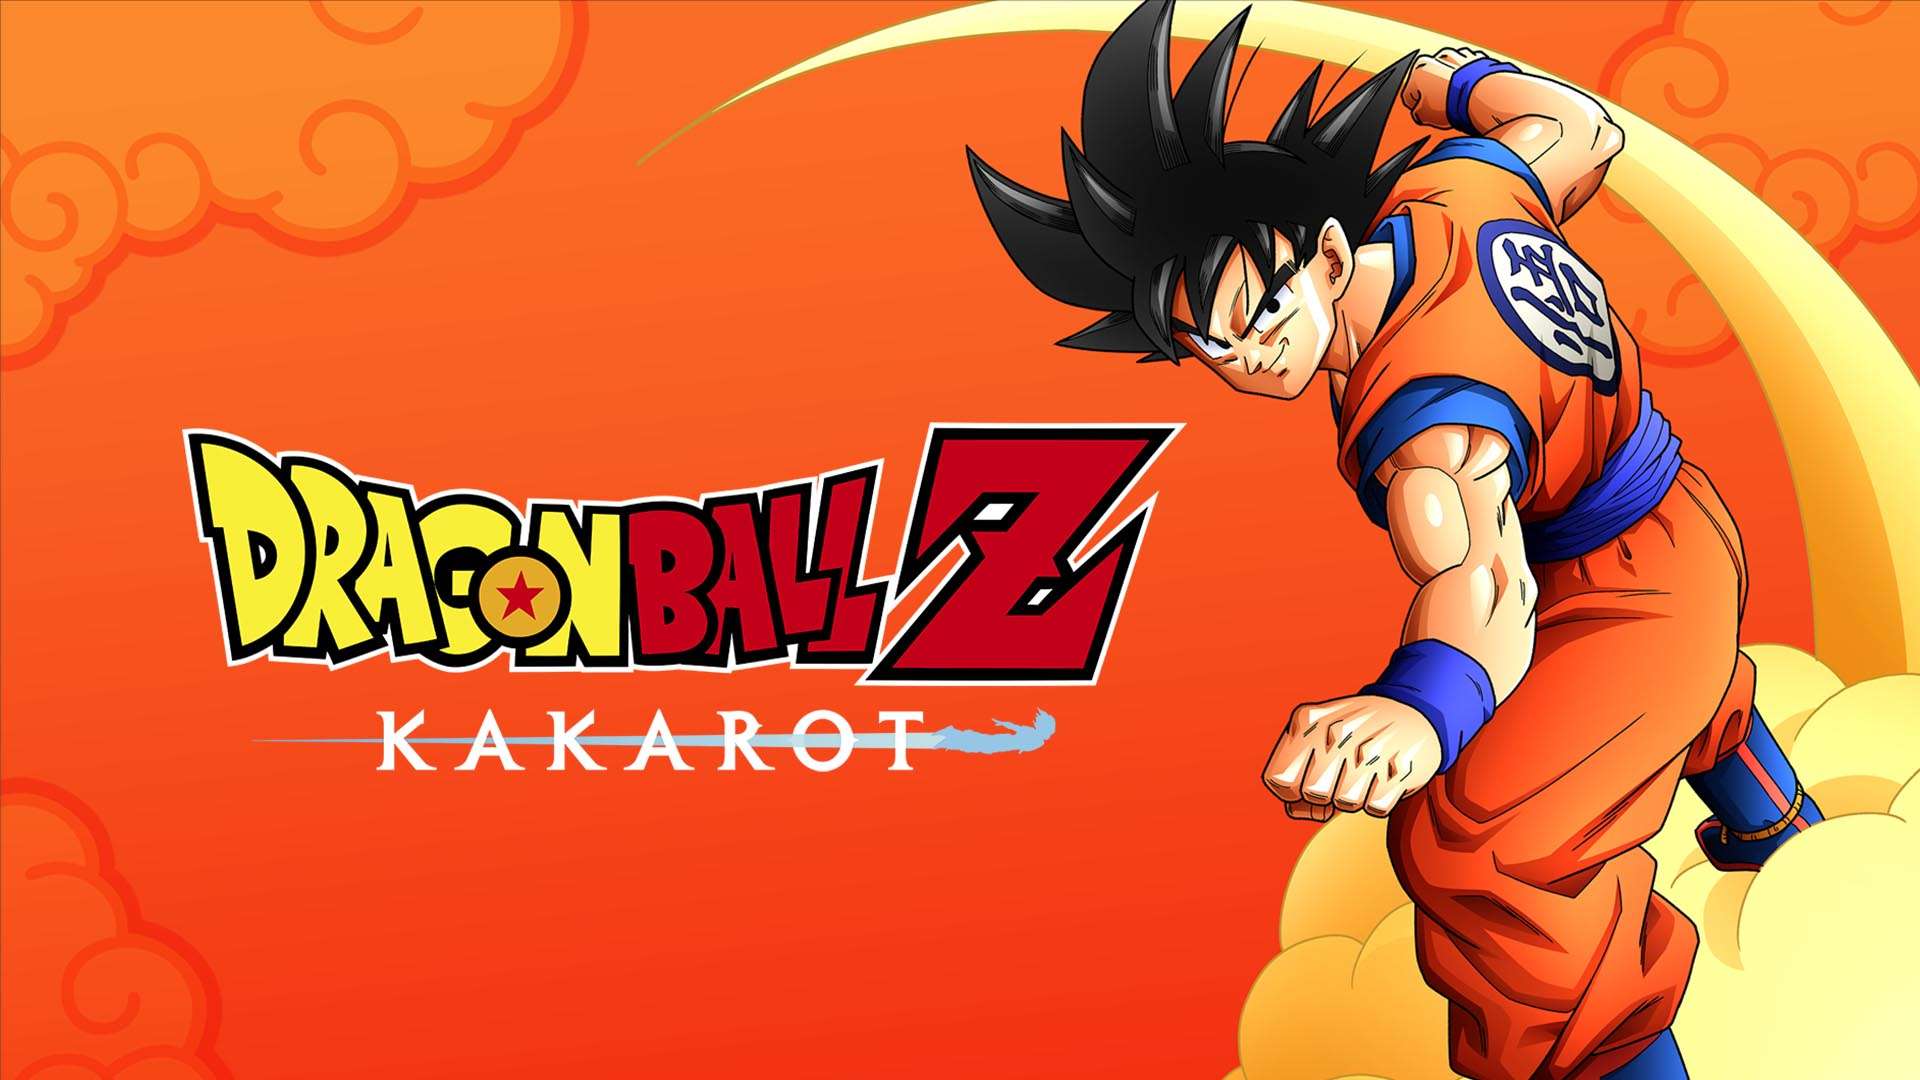 Dragon Ball Z Kakarot nos muestra nuevas imágenes de su nueva expansión